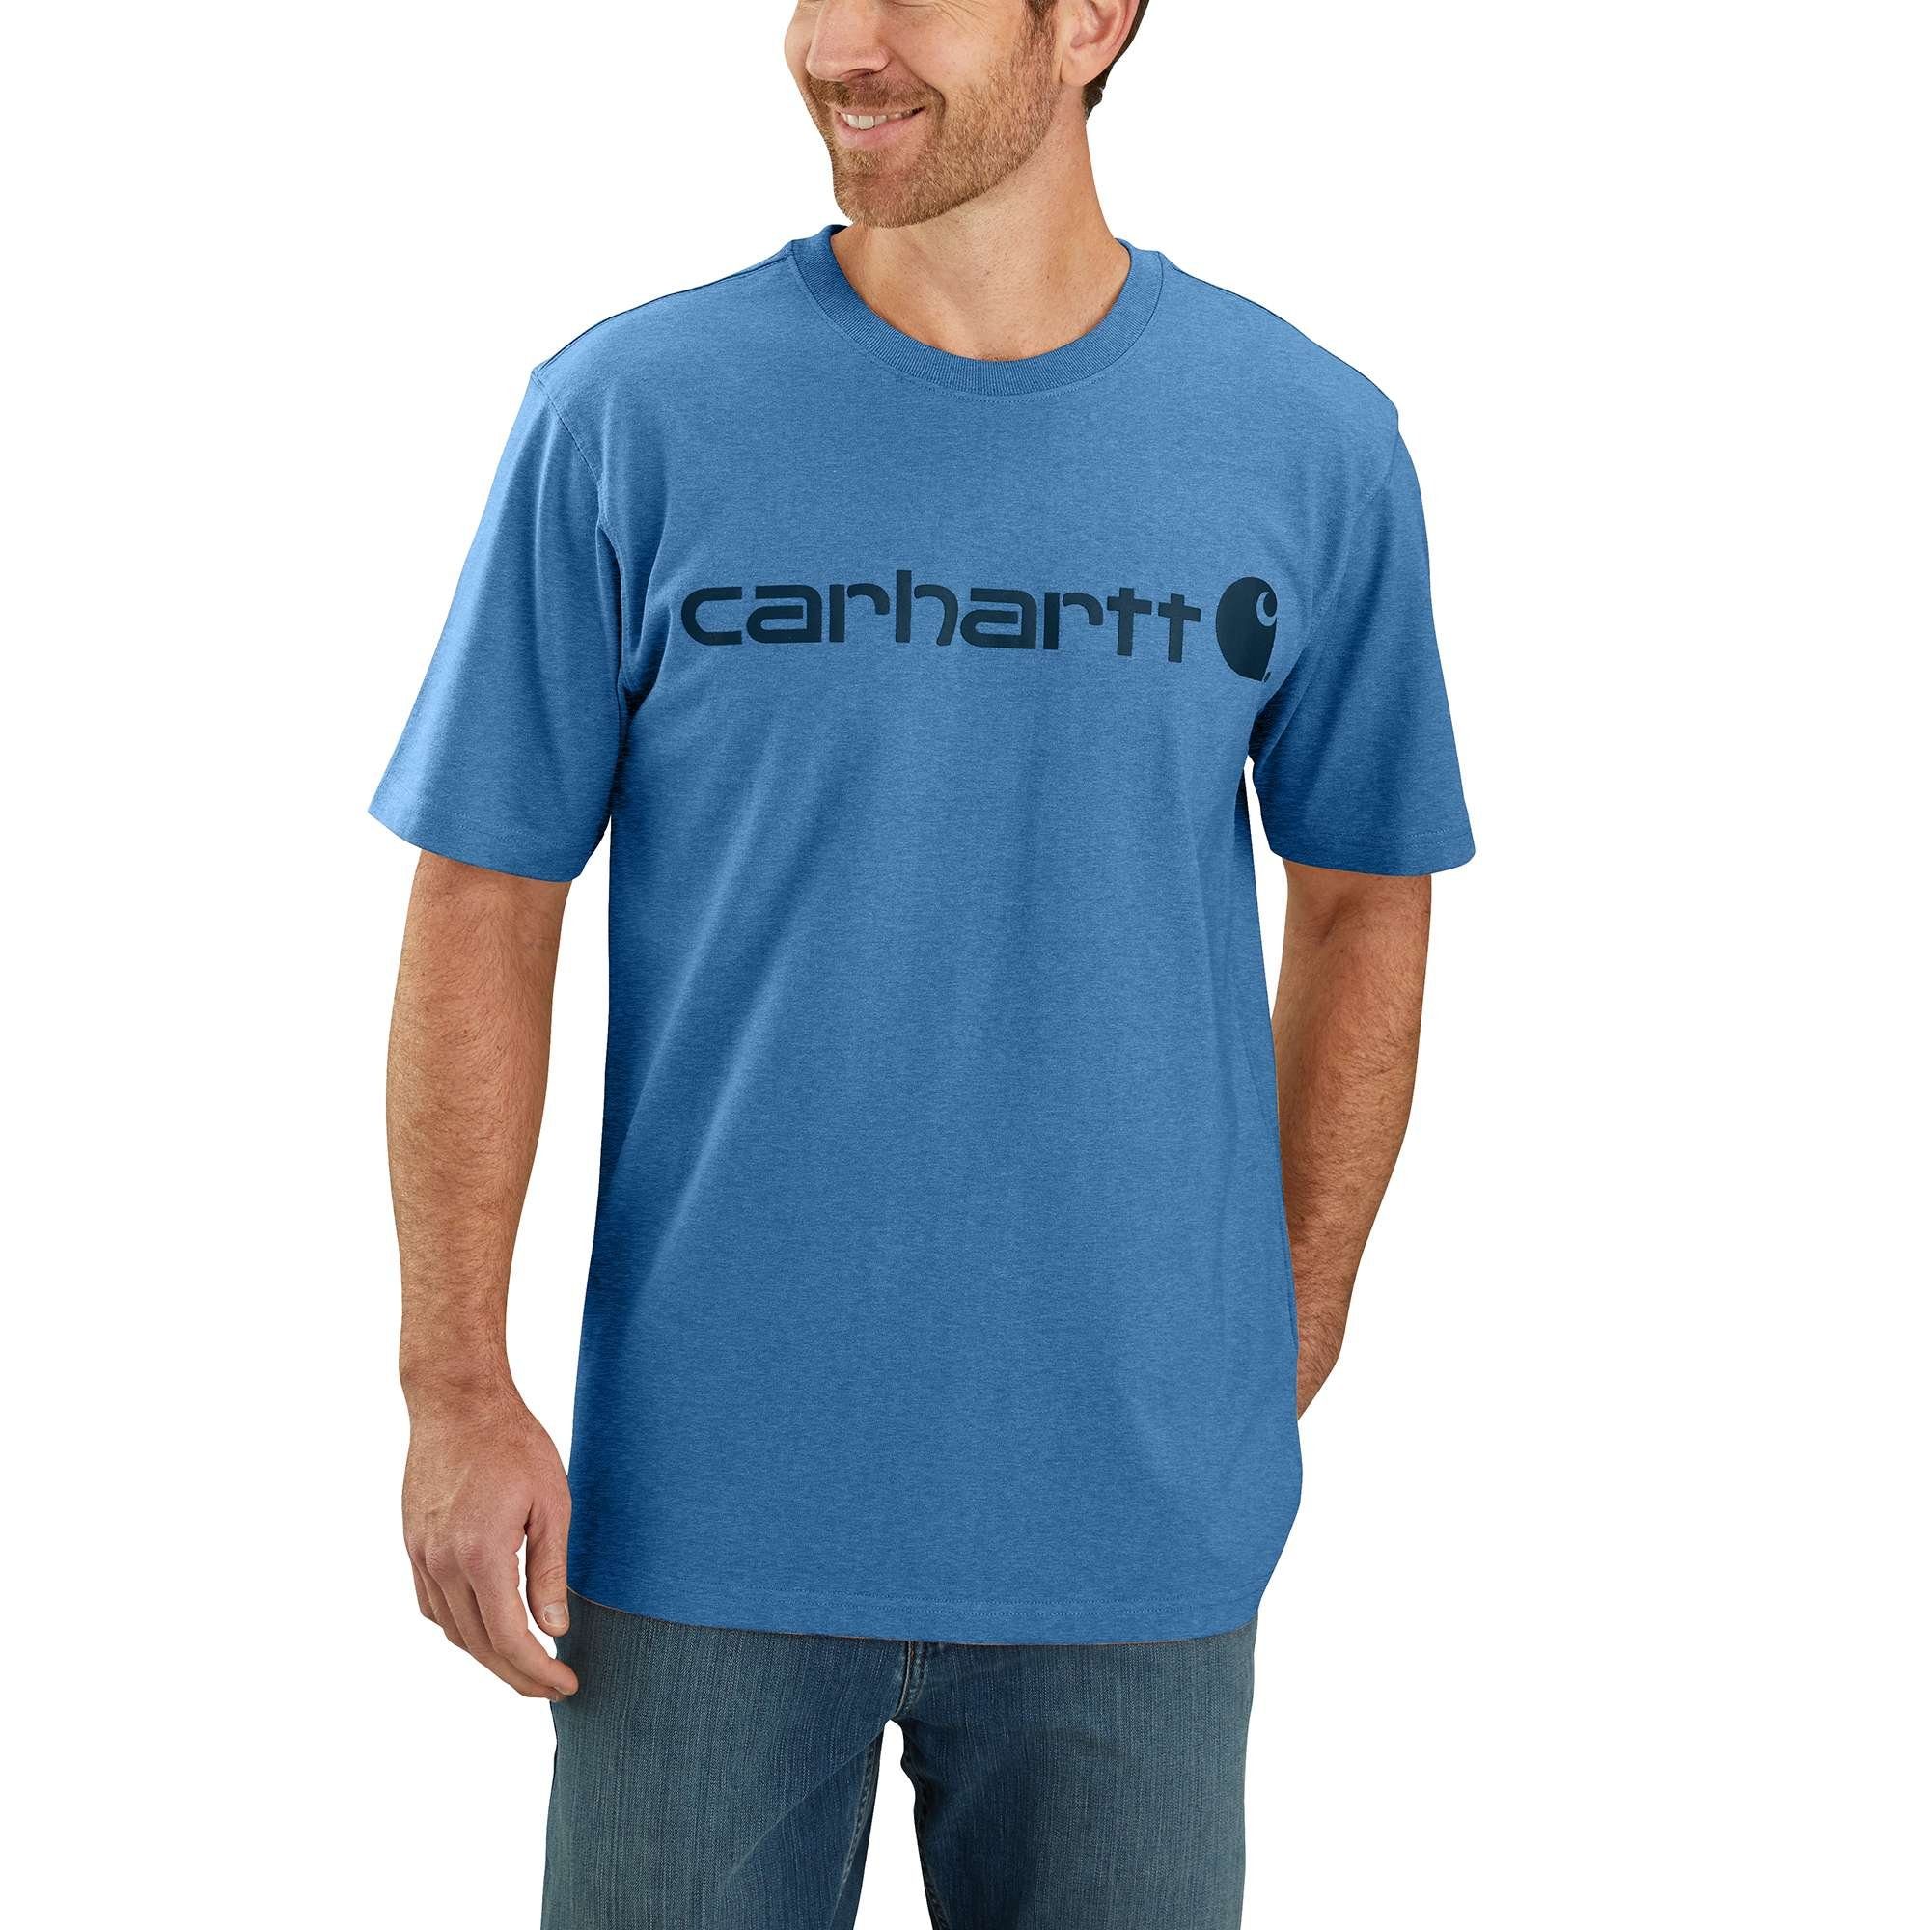 Fit Adult T-Shirt heather Logo Carhartt Heavyweight Herren Carhartt T-Shirt Relaxed coastal Short-Sleeve Graphic